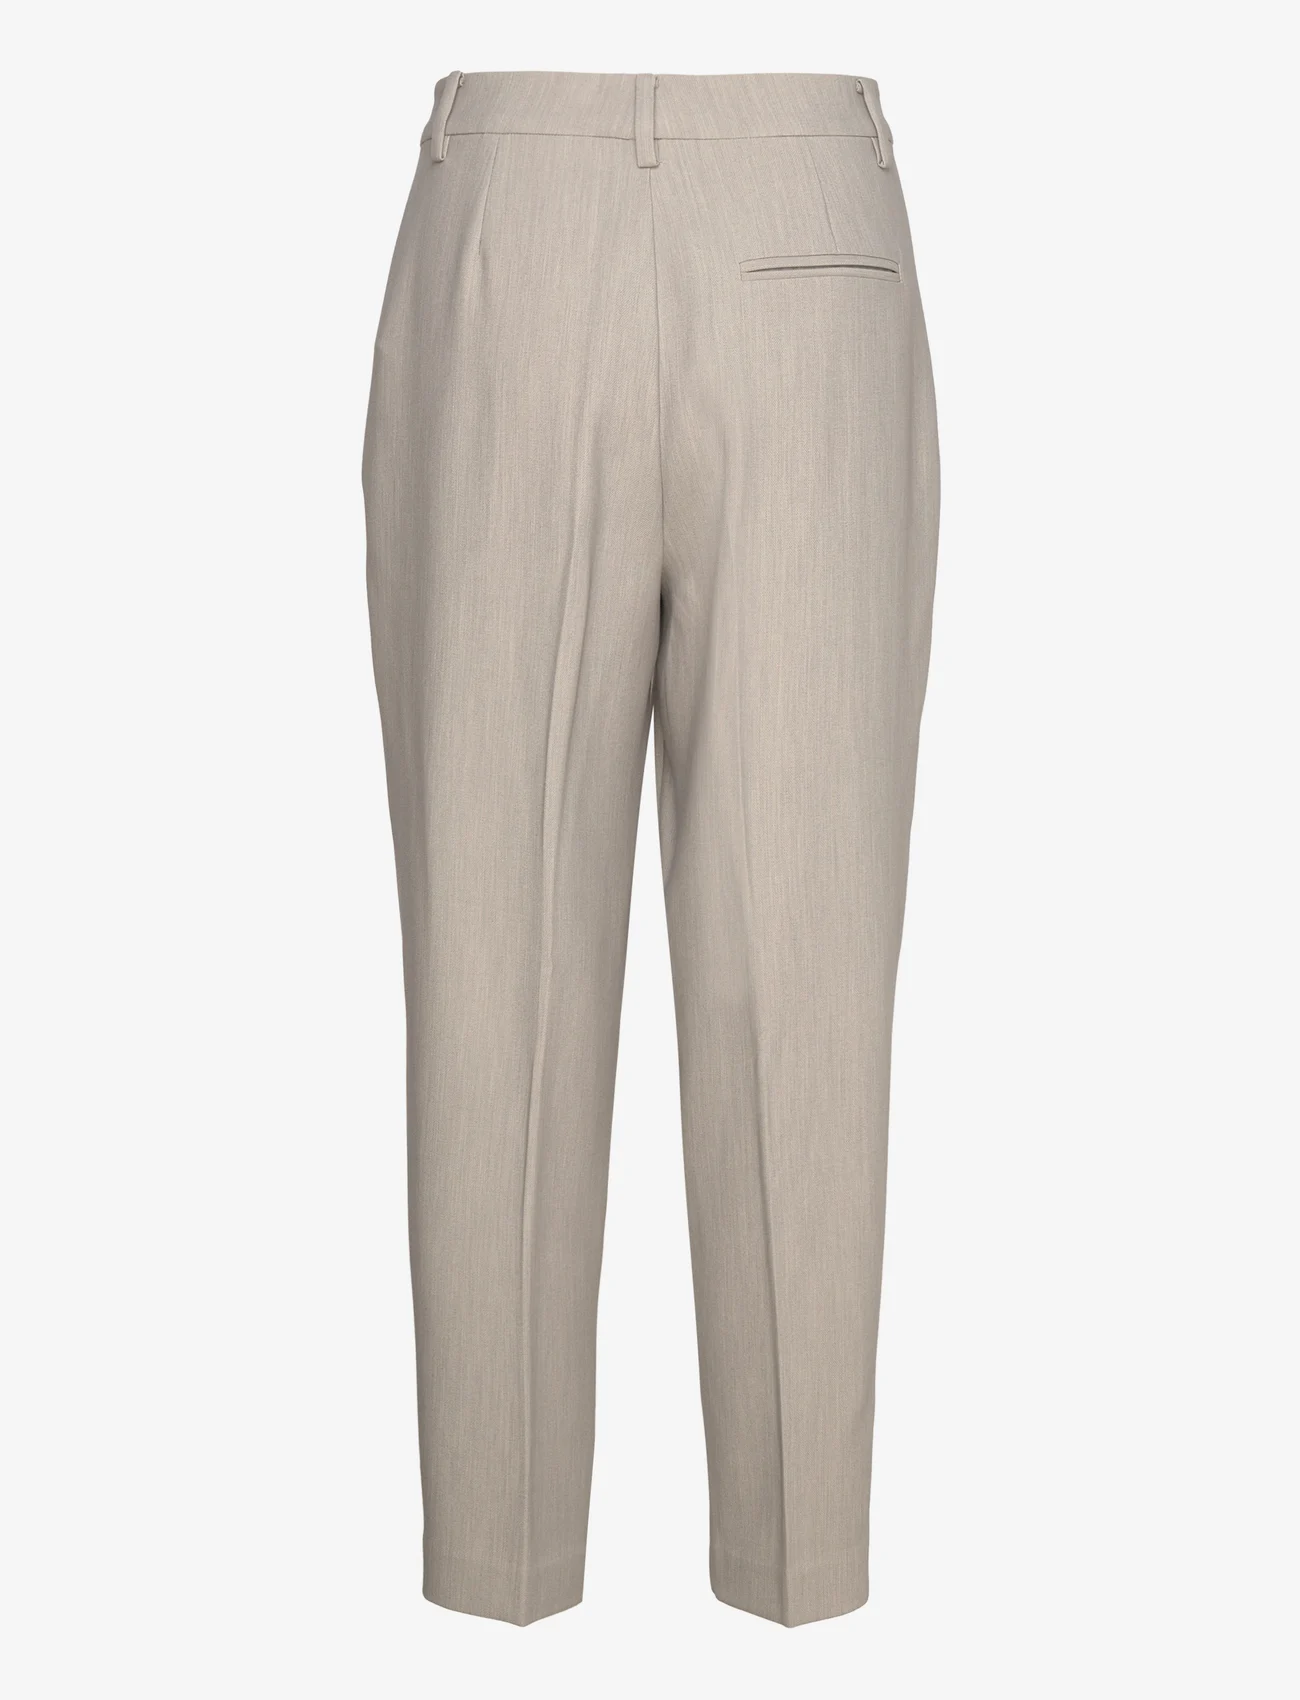 Bruuns Bazaar - CindySusBBDagny pants - feestelijke kleding voor outlet-prijzen - light grey melange - 1